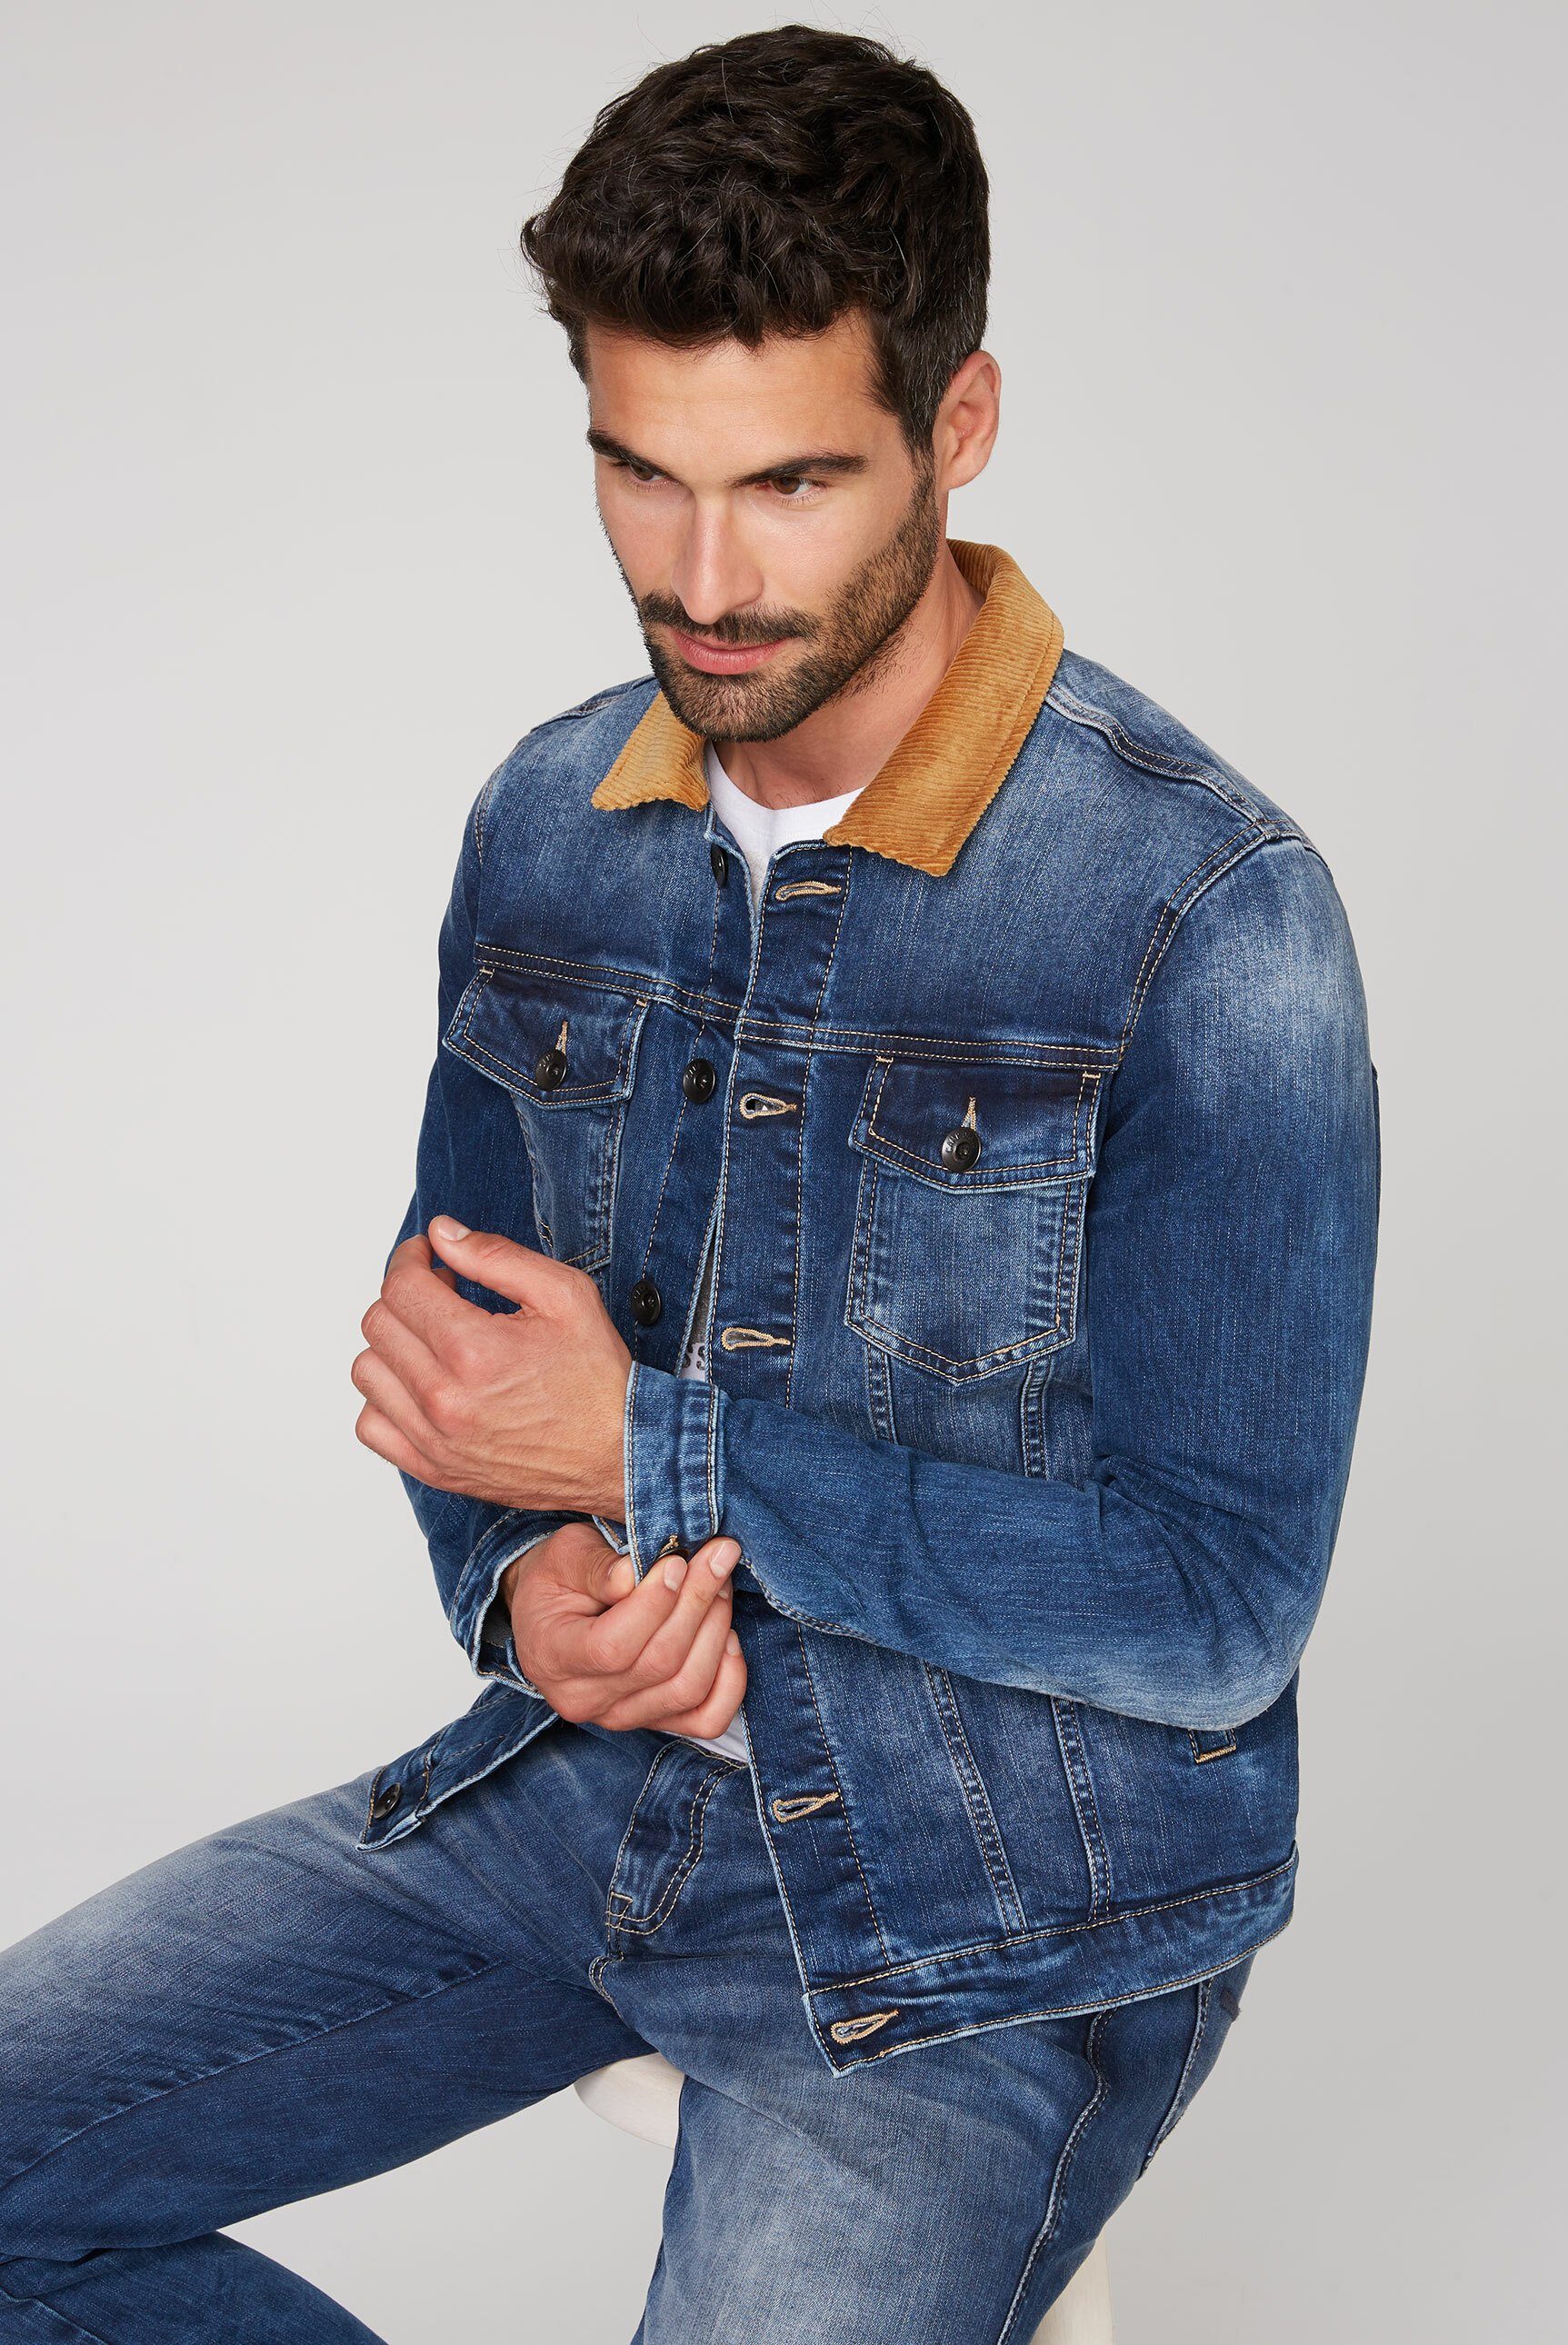 CAMP DAVID Jeansjacke mit Cord-Kragen, Seitliche Einschubtaschen online  kaufen | OTTO